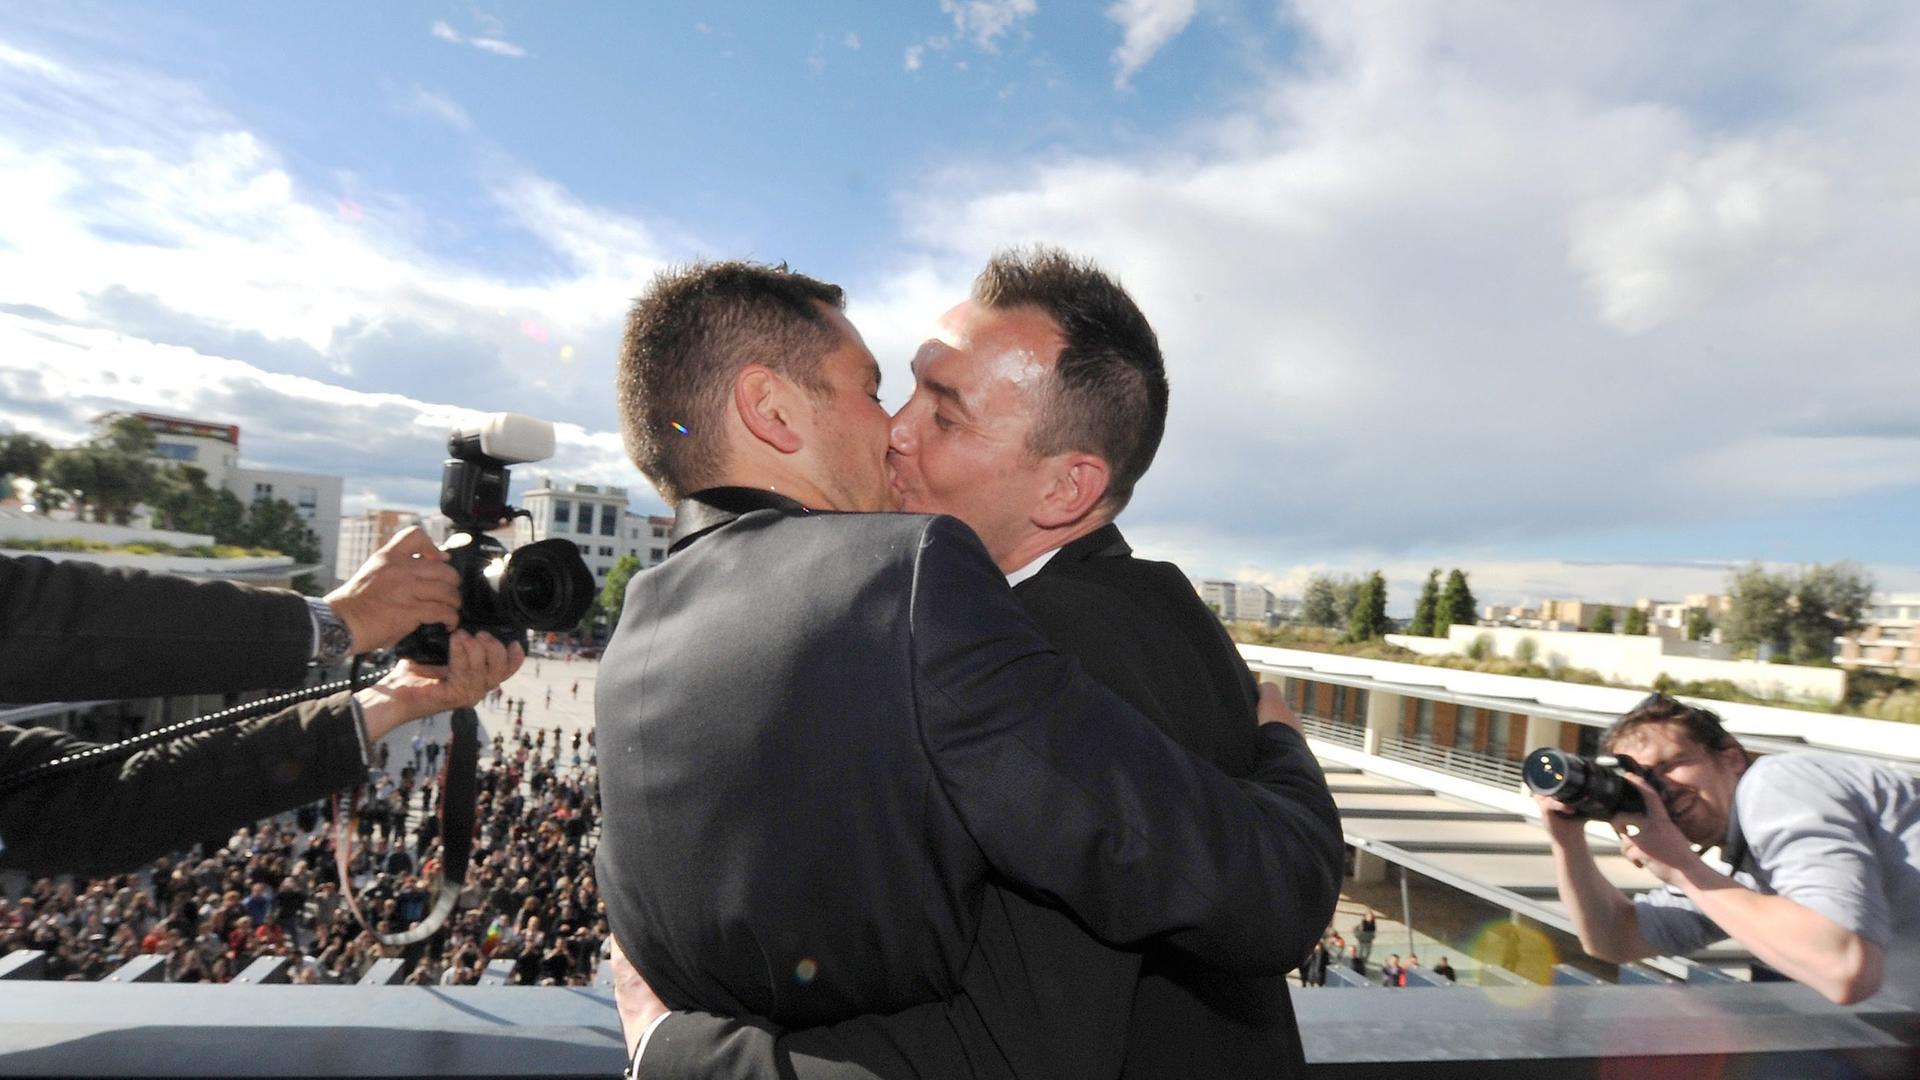 Vincent Autin und sein Partner Bruno Boileau küssen sich nach ihrer standesamtlichen Hochzeit im Mai 2013 in Montpellier.